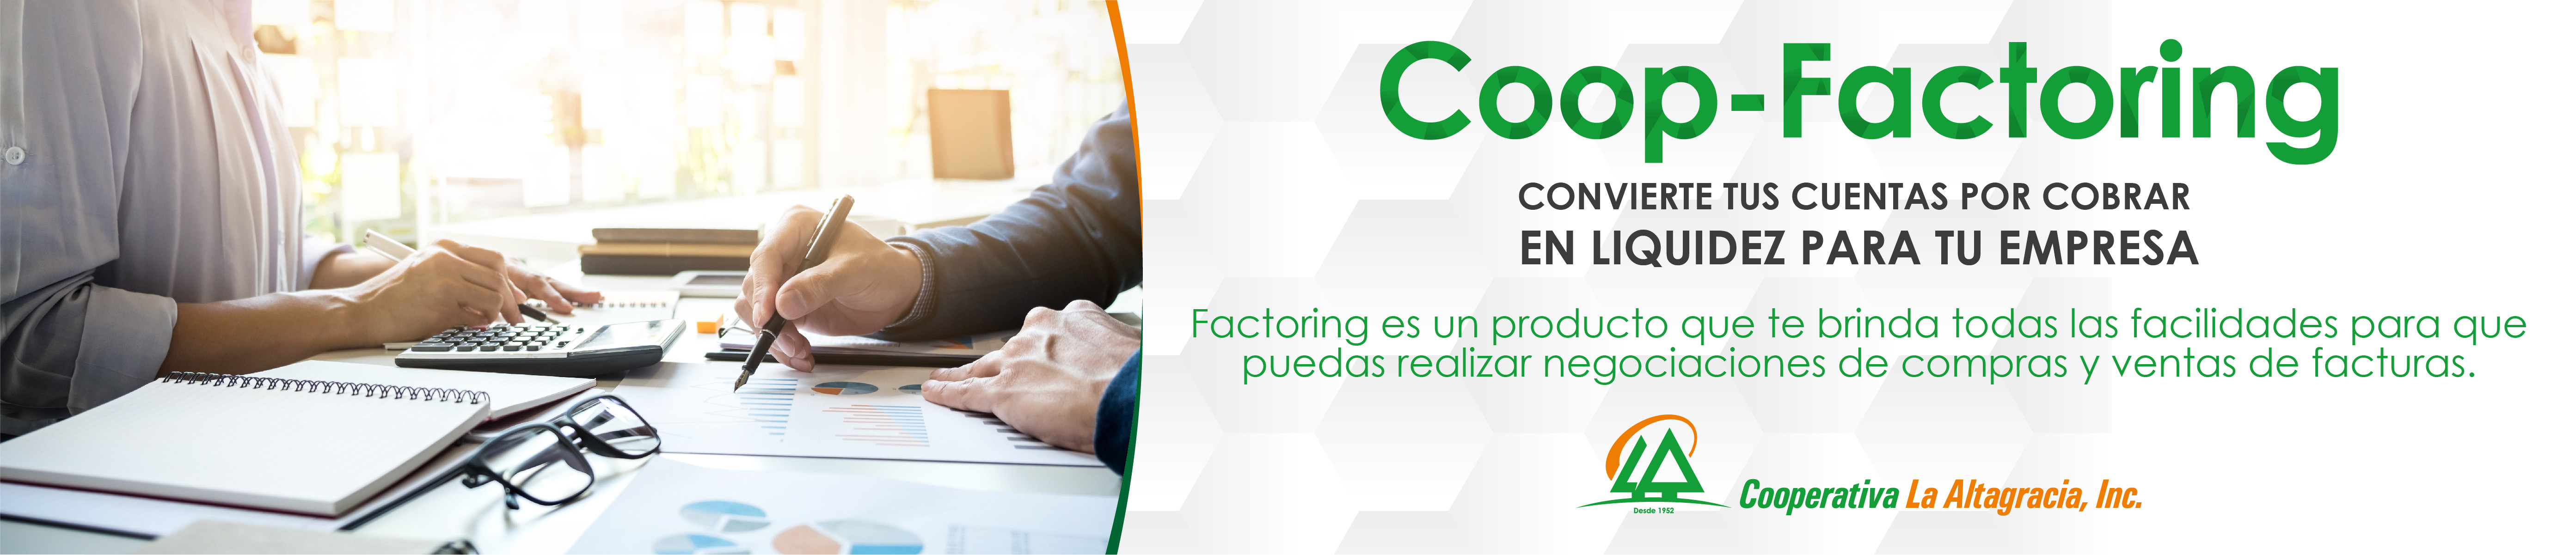 Coop  Factoring CoopAltagracia  Diario de Salud 15